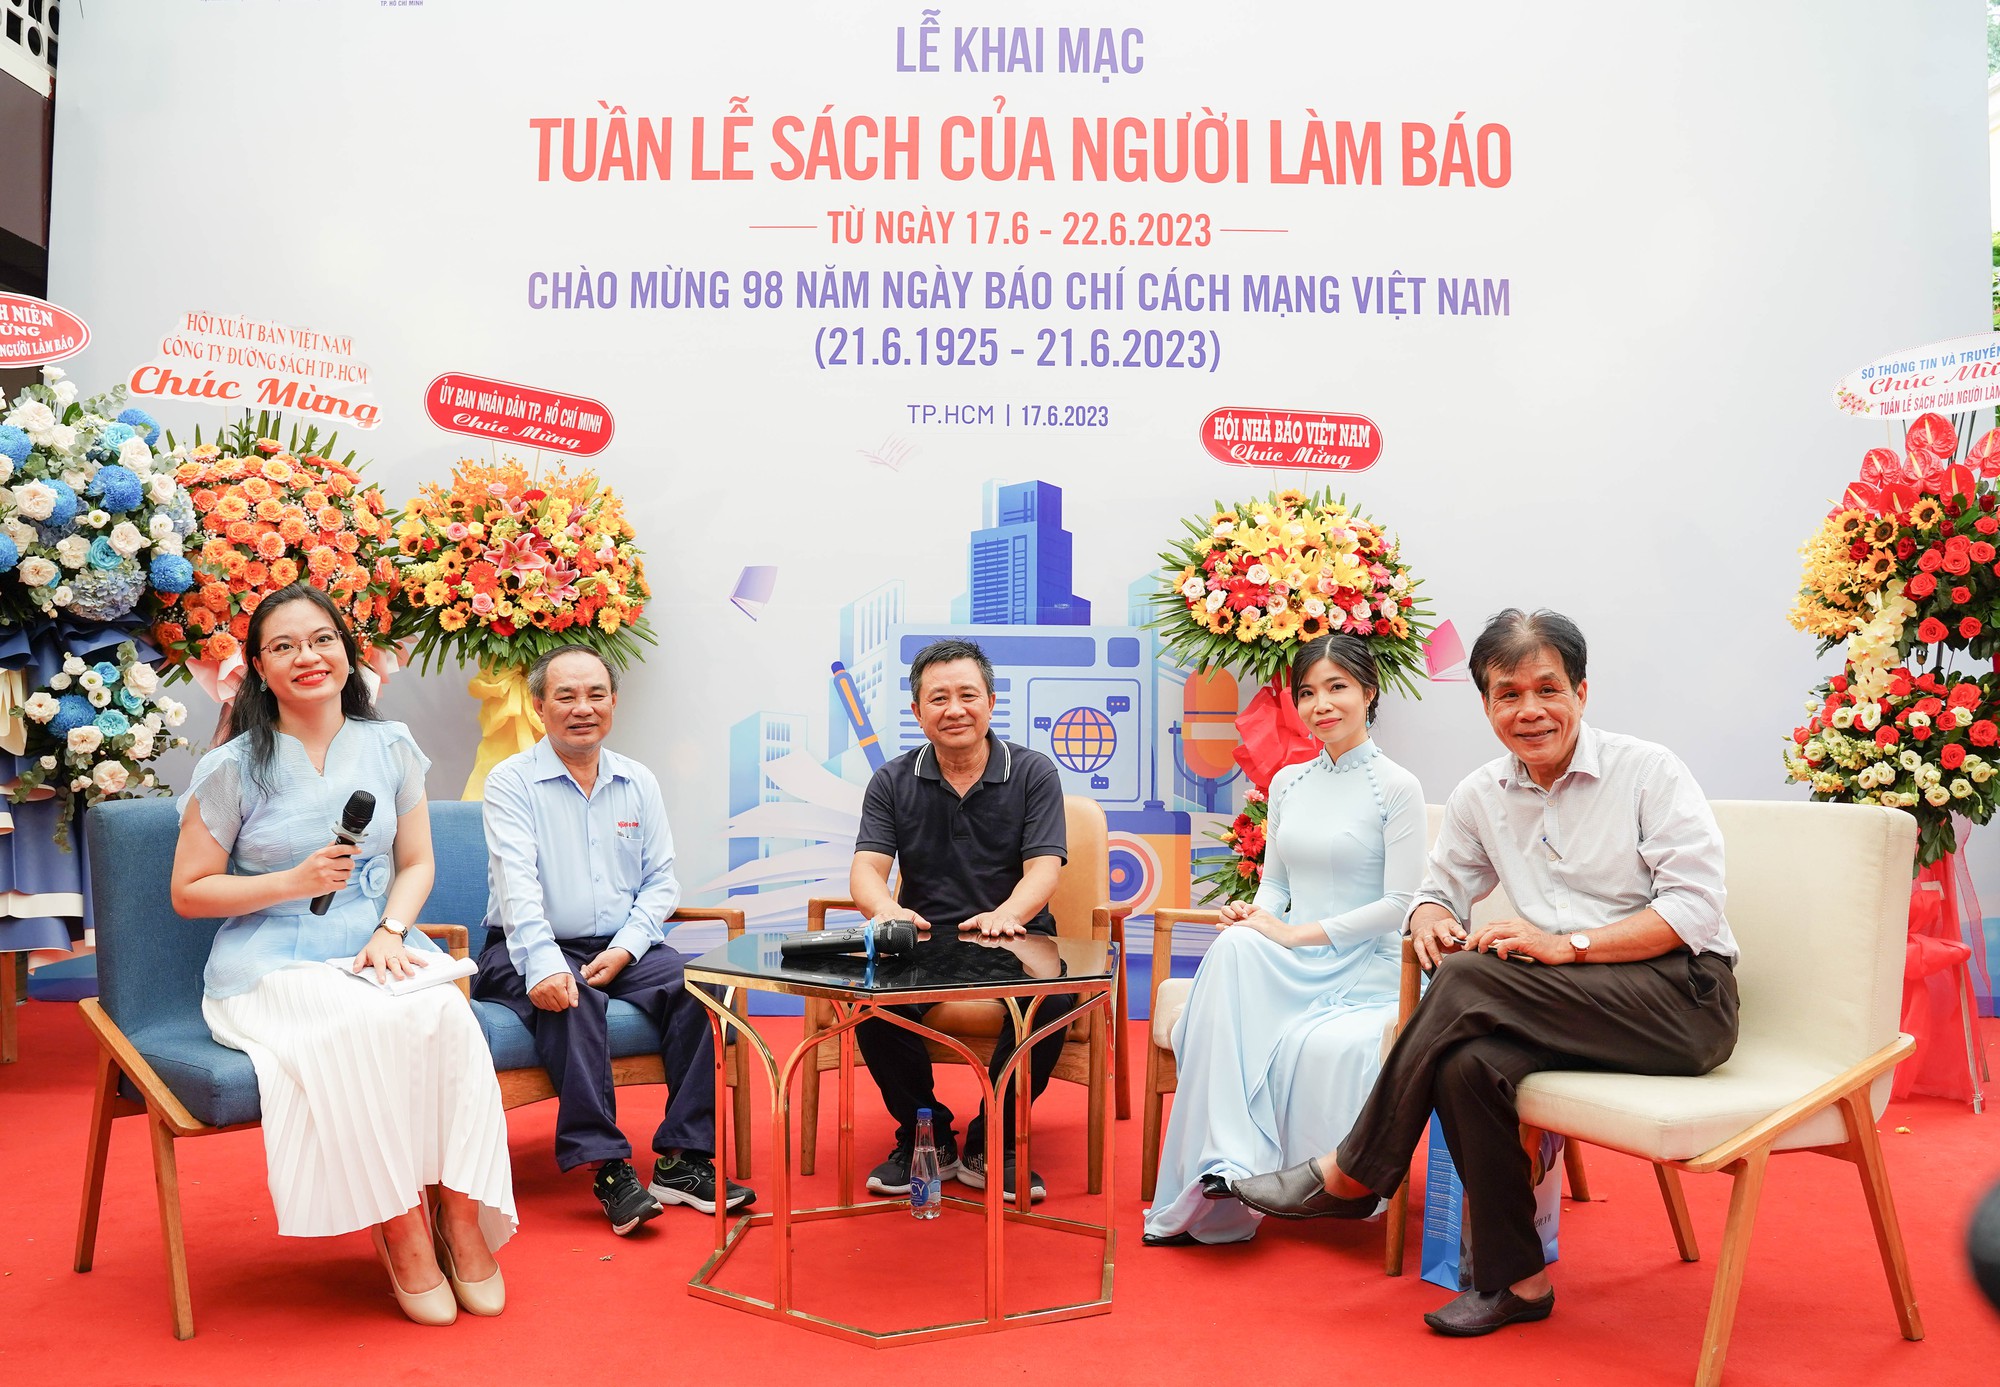 TP.HCM tổ chức tuần lễ sách nhân ngày Báo chí cách mạng Việt Nam - Ảnh 2.